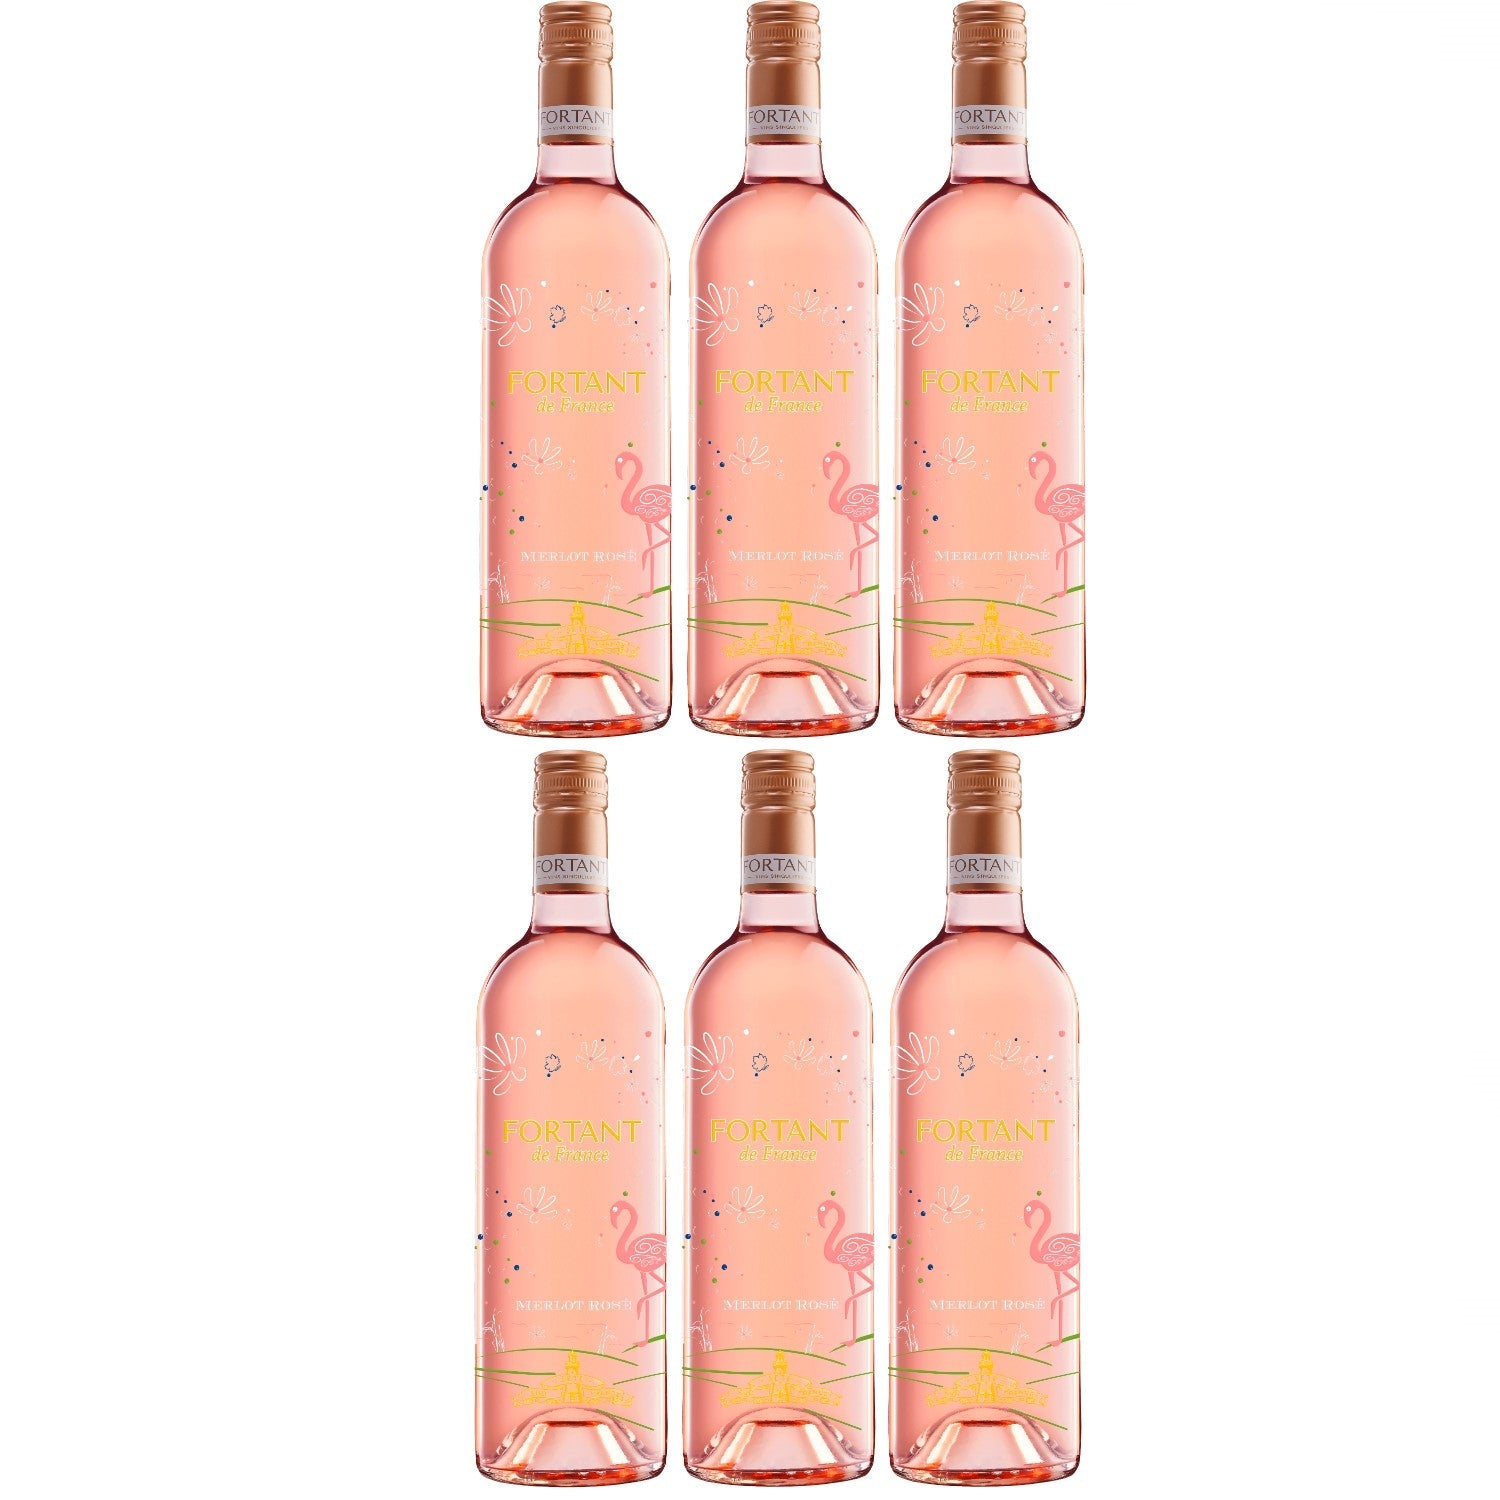 Fortant der France Merlot Rosé Edition Roséwein Wein halbtrocken Frankreich (6 x 0.75l) - Versanel -